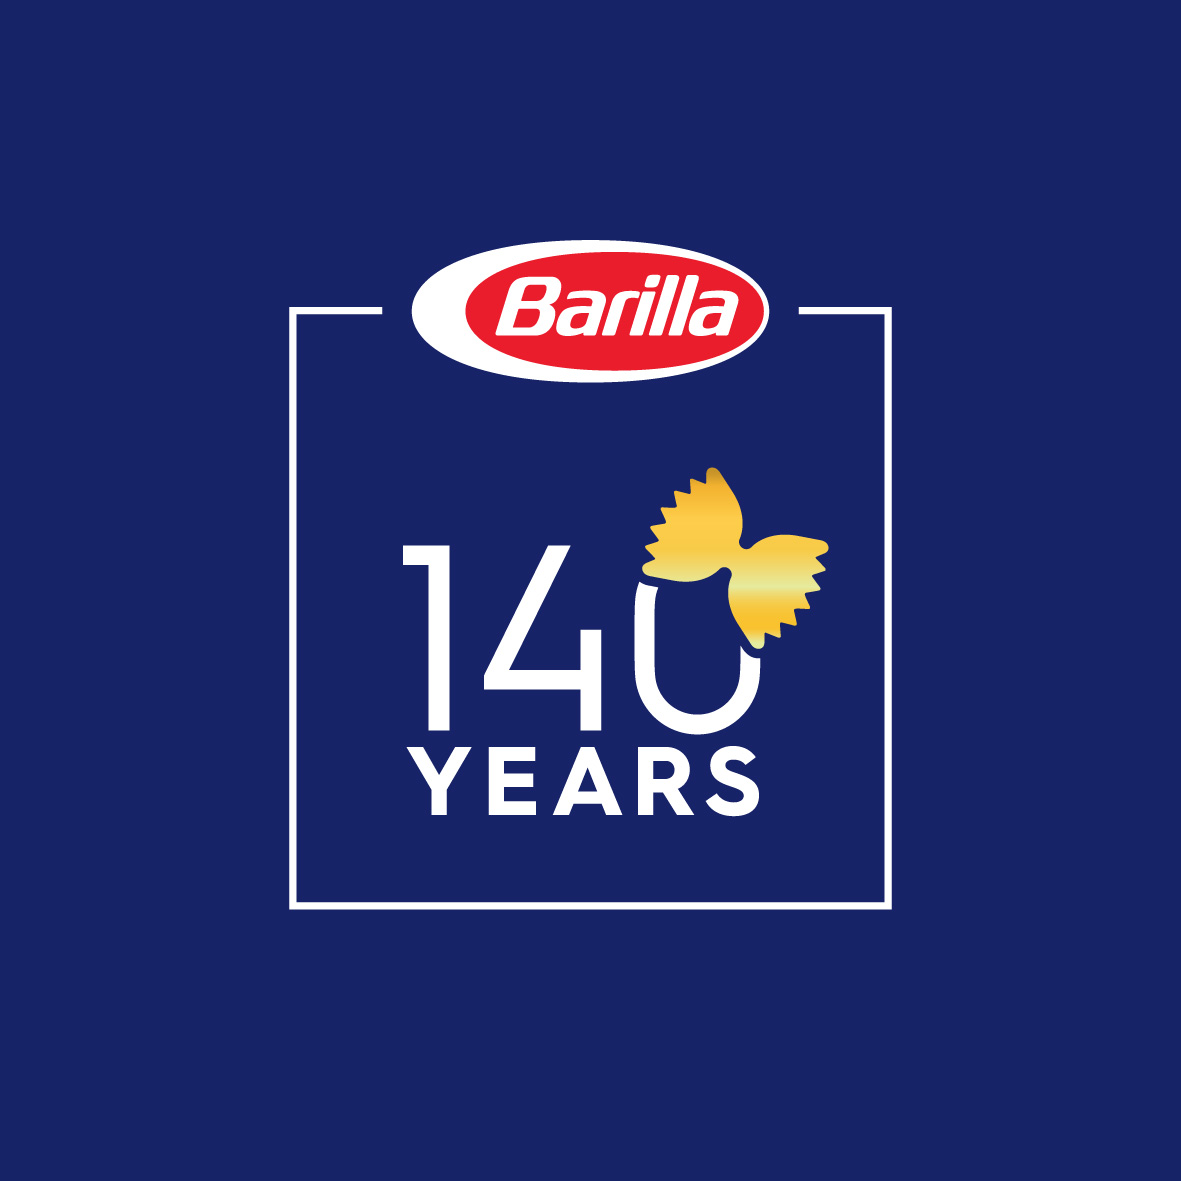 2017 - Barilla 140th anniversary Logo